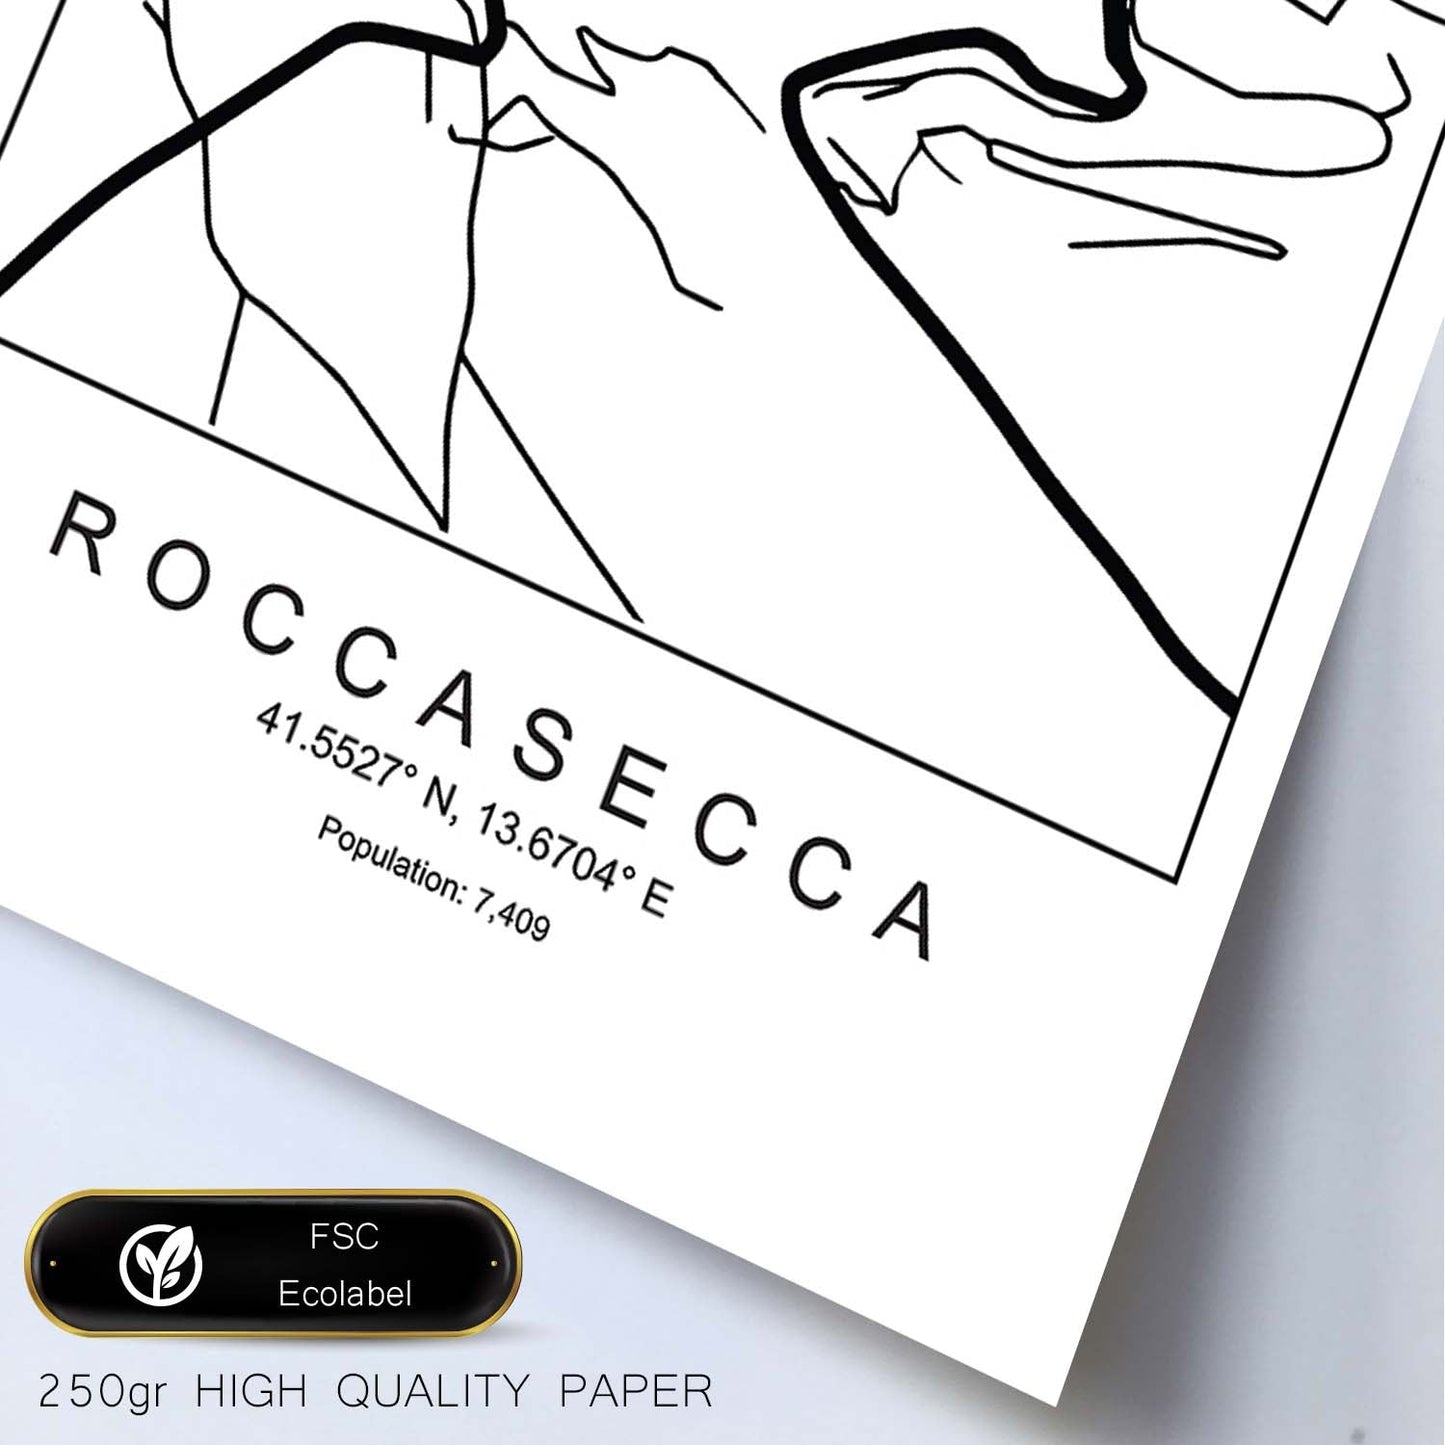 Lámina mapa de la ciudad Roccasecca estilo nordico en blanco y negro.-Artwork-Nacnic-Nacnic Estudio SL